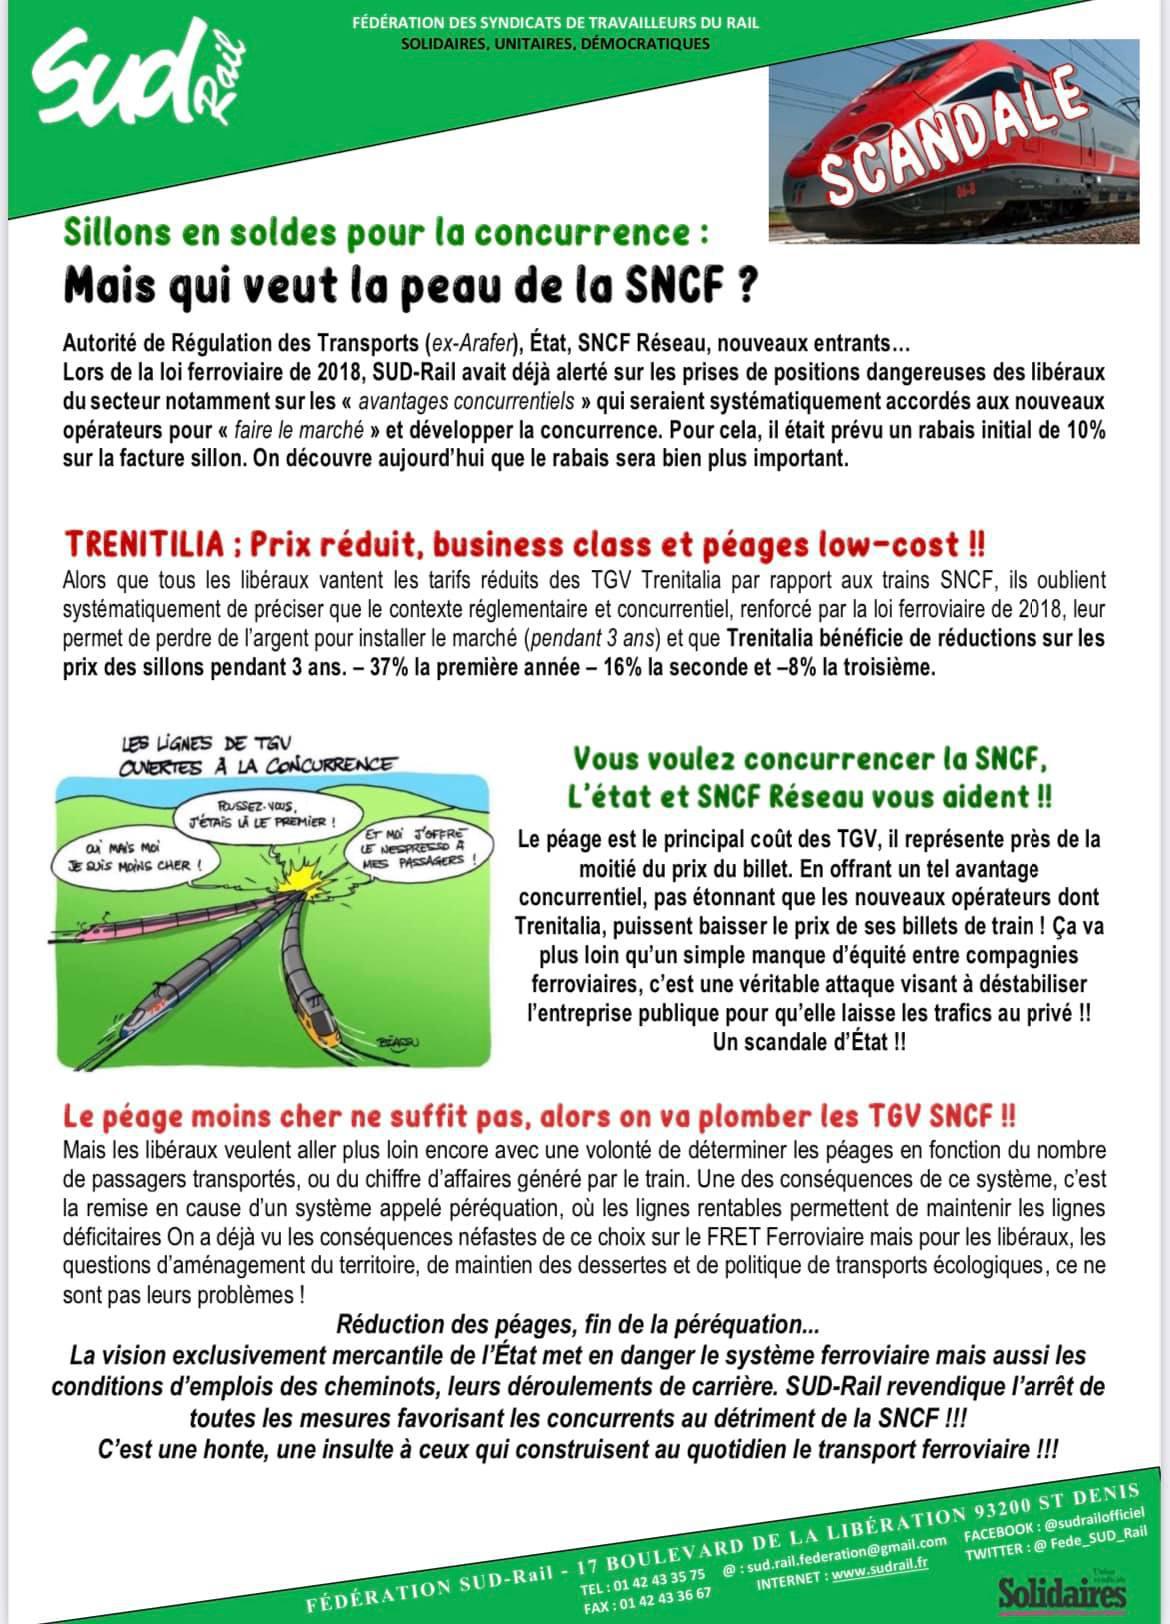 Scandale - Mais qui veut la peau de la SNCF ?